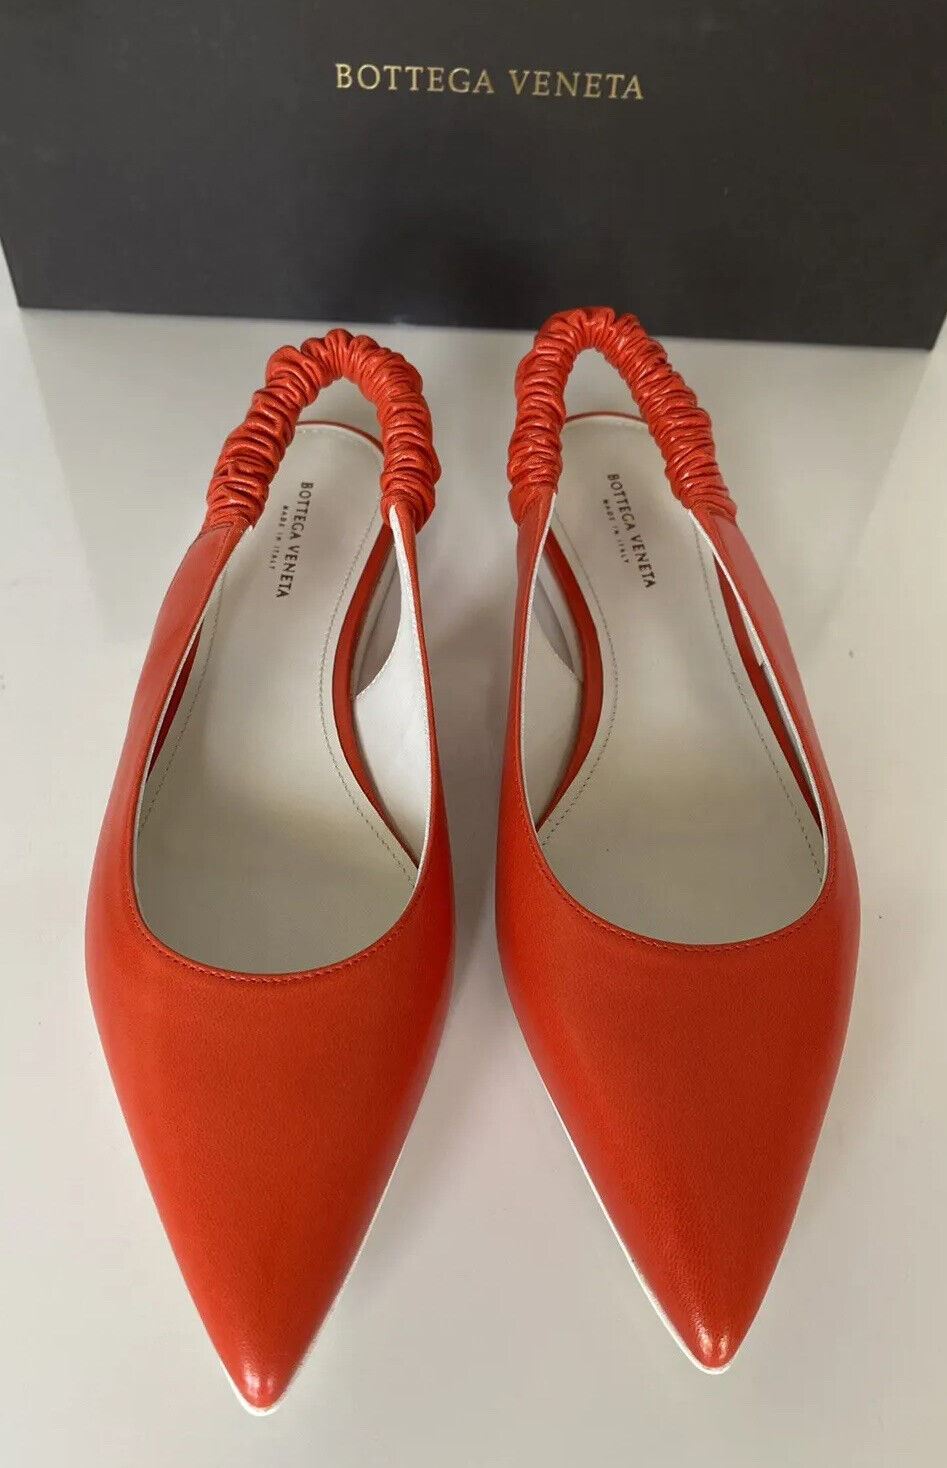 NIB Женские туфли-лодочки на плоской подошве Bottega Veneta, 620 долларов США, красновато-оранжевые, 8, США, 565640, Италия 